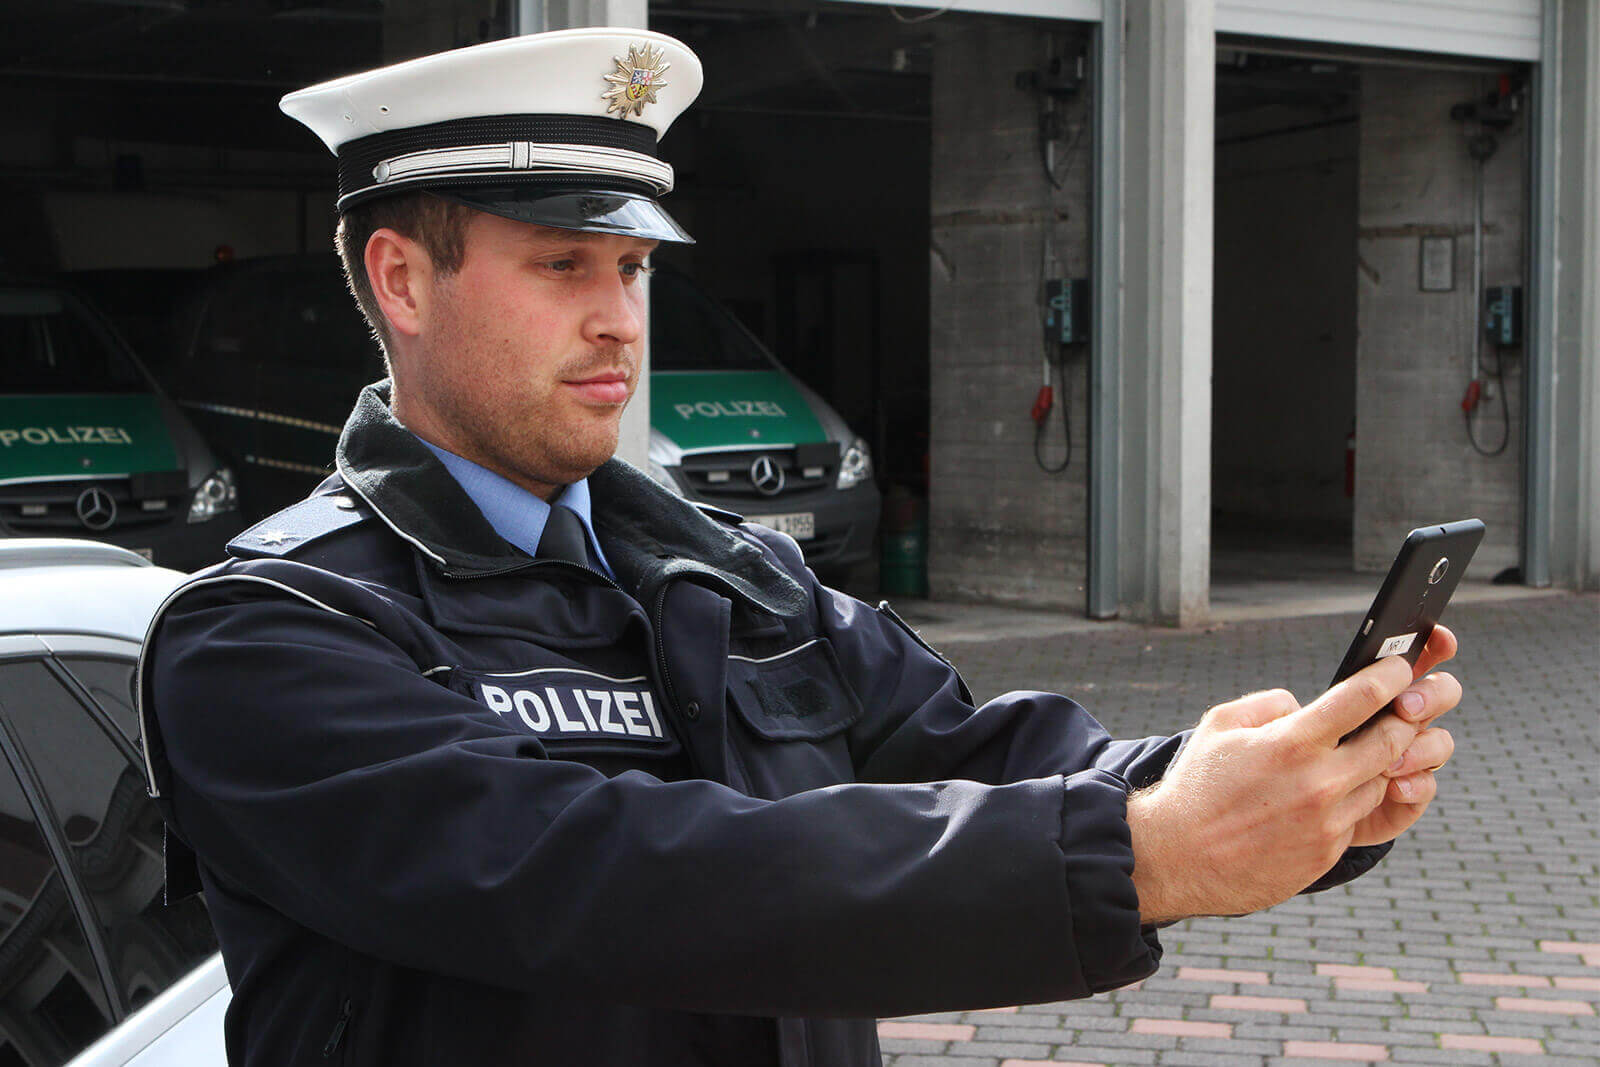 Success Story: Mobile Polizeiarbeit – Rheinland-Pfalz und Saarland